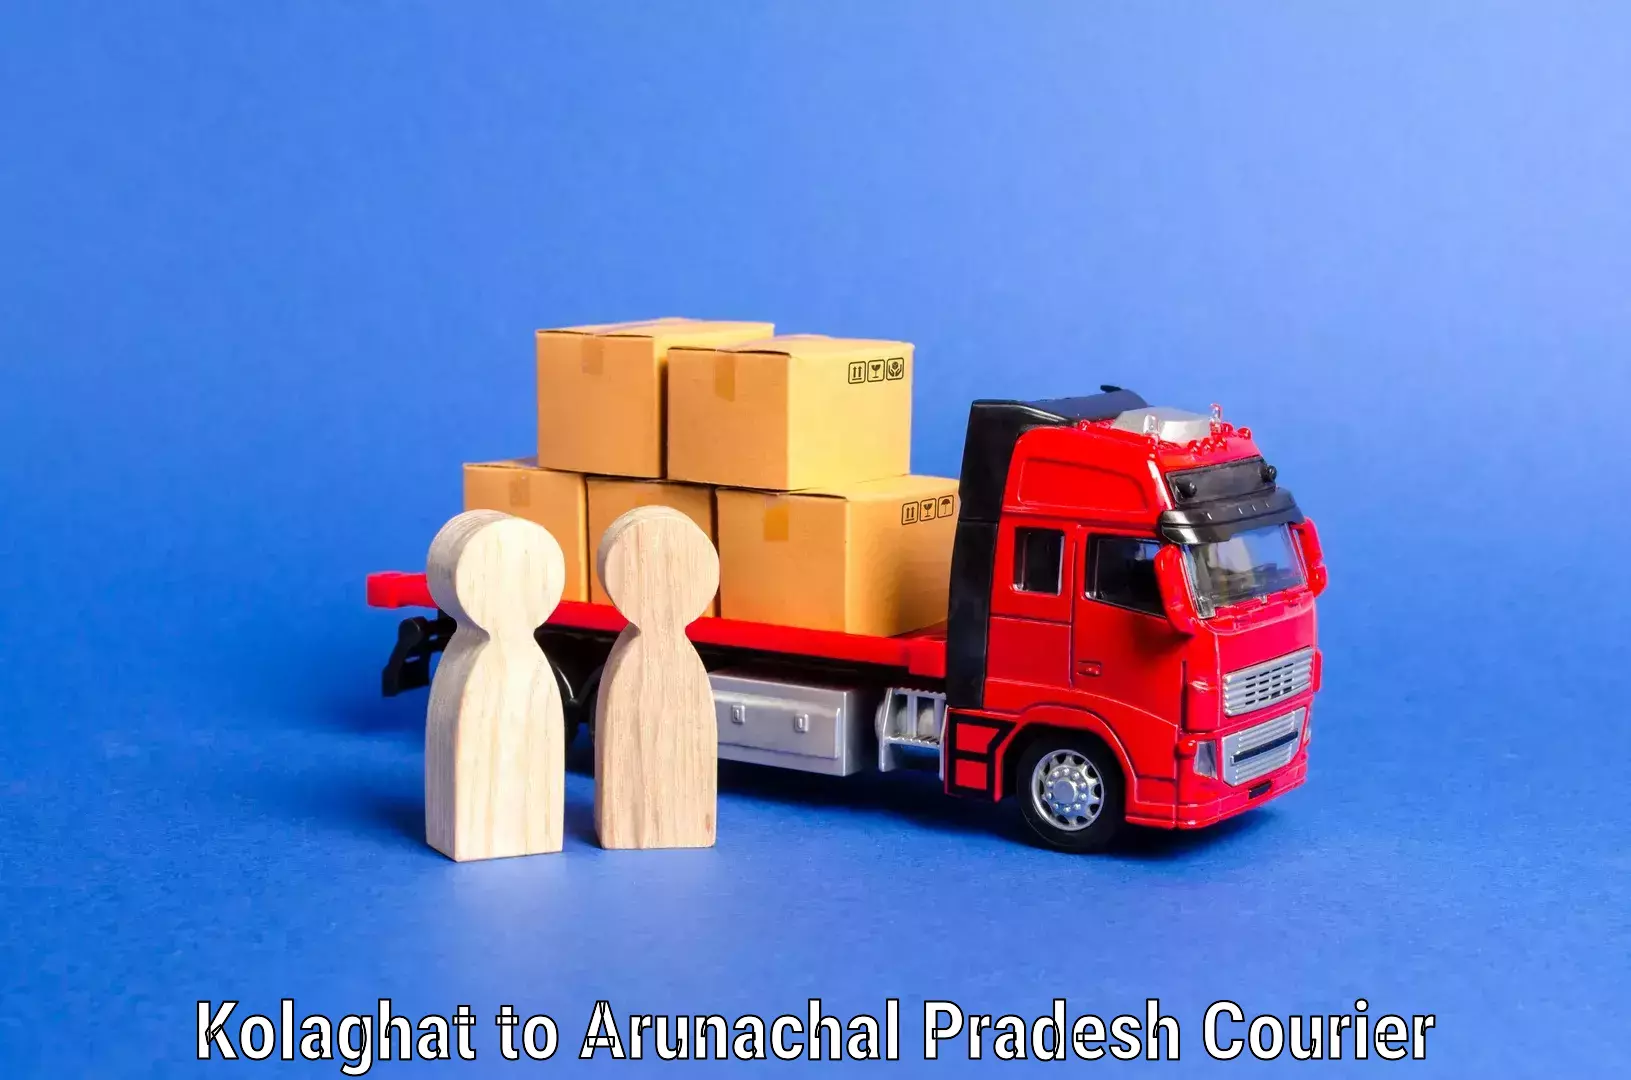 Furniture moving plans Kolaghat to Arunachal Pradesh